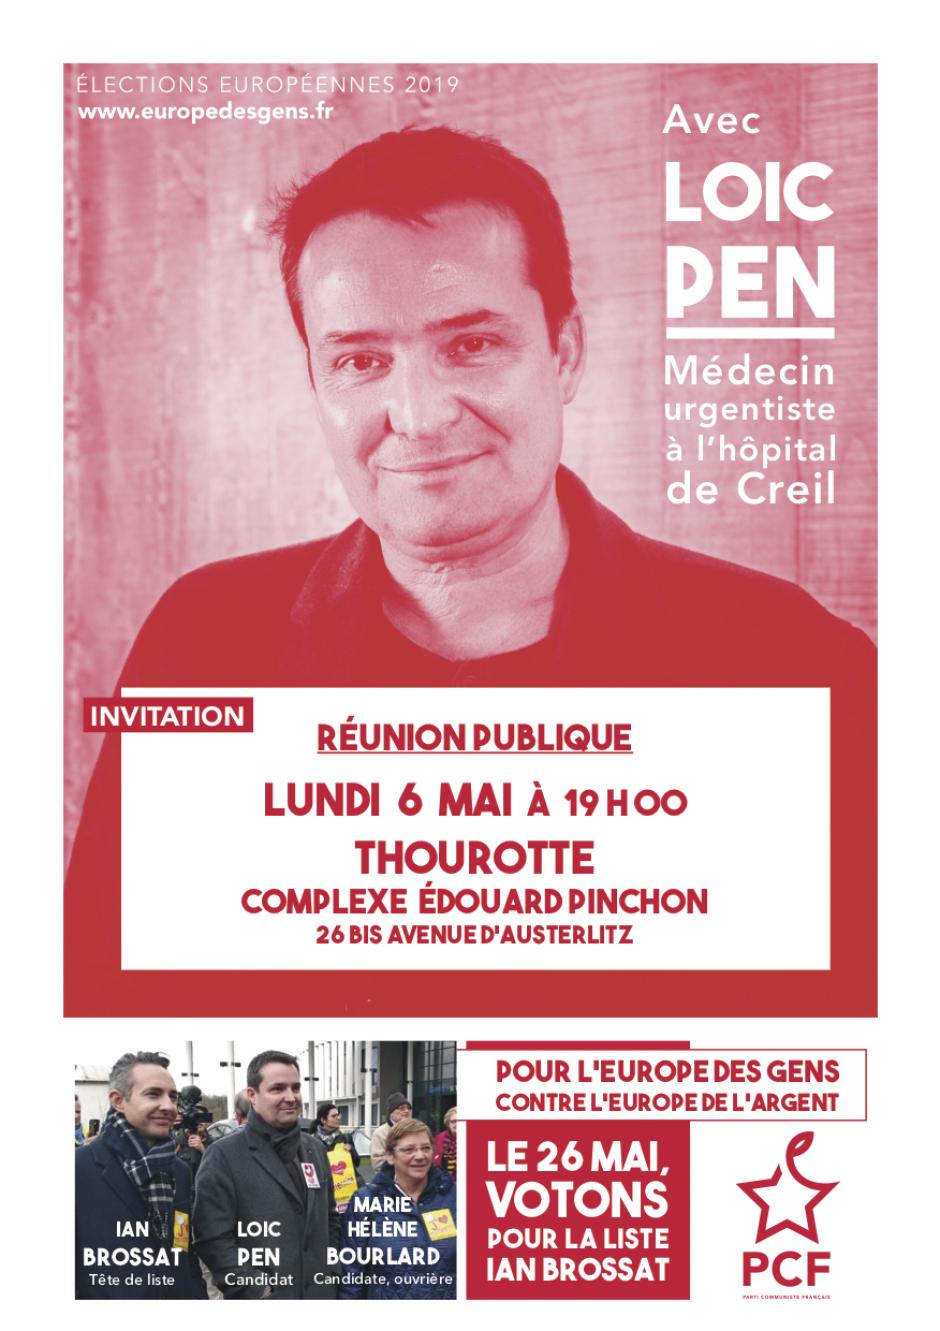 6 mai, Thourotte - Européennes 2019 : réunion publique avec le candidat Loïc Pen